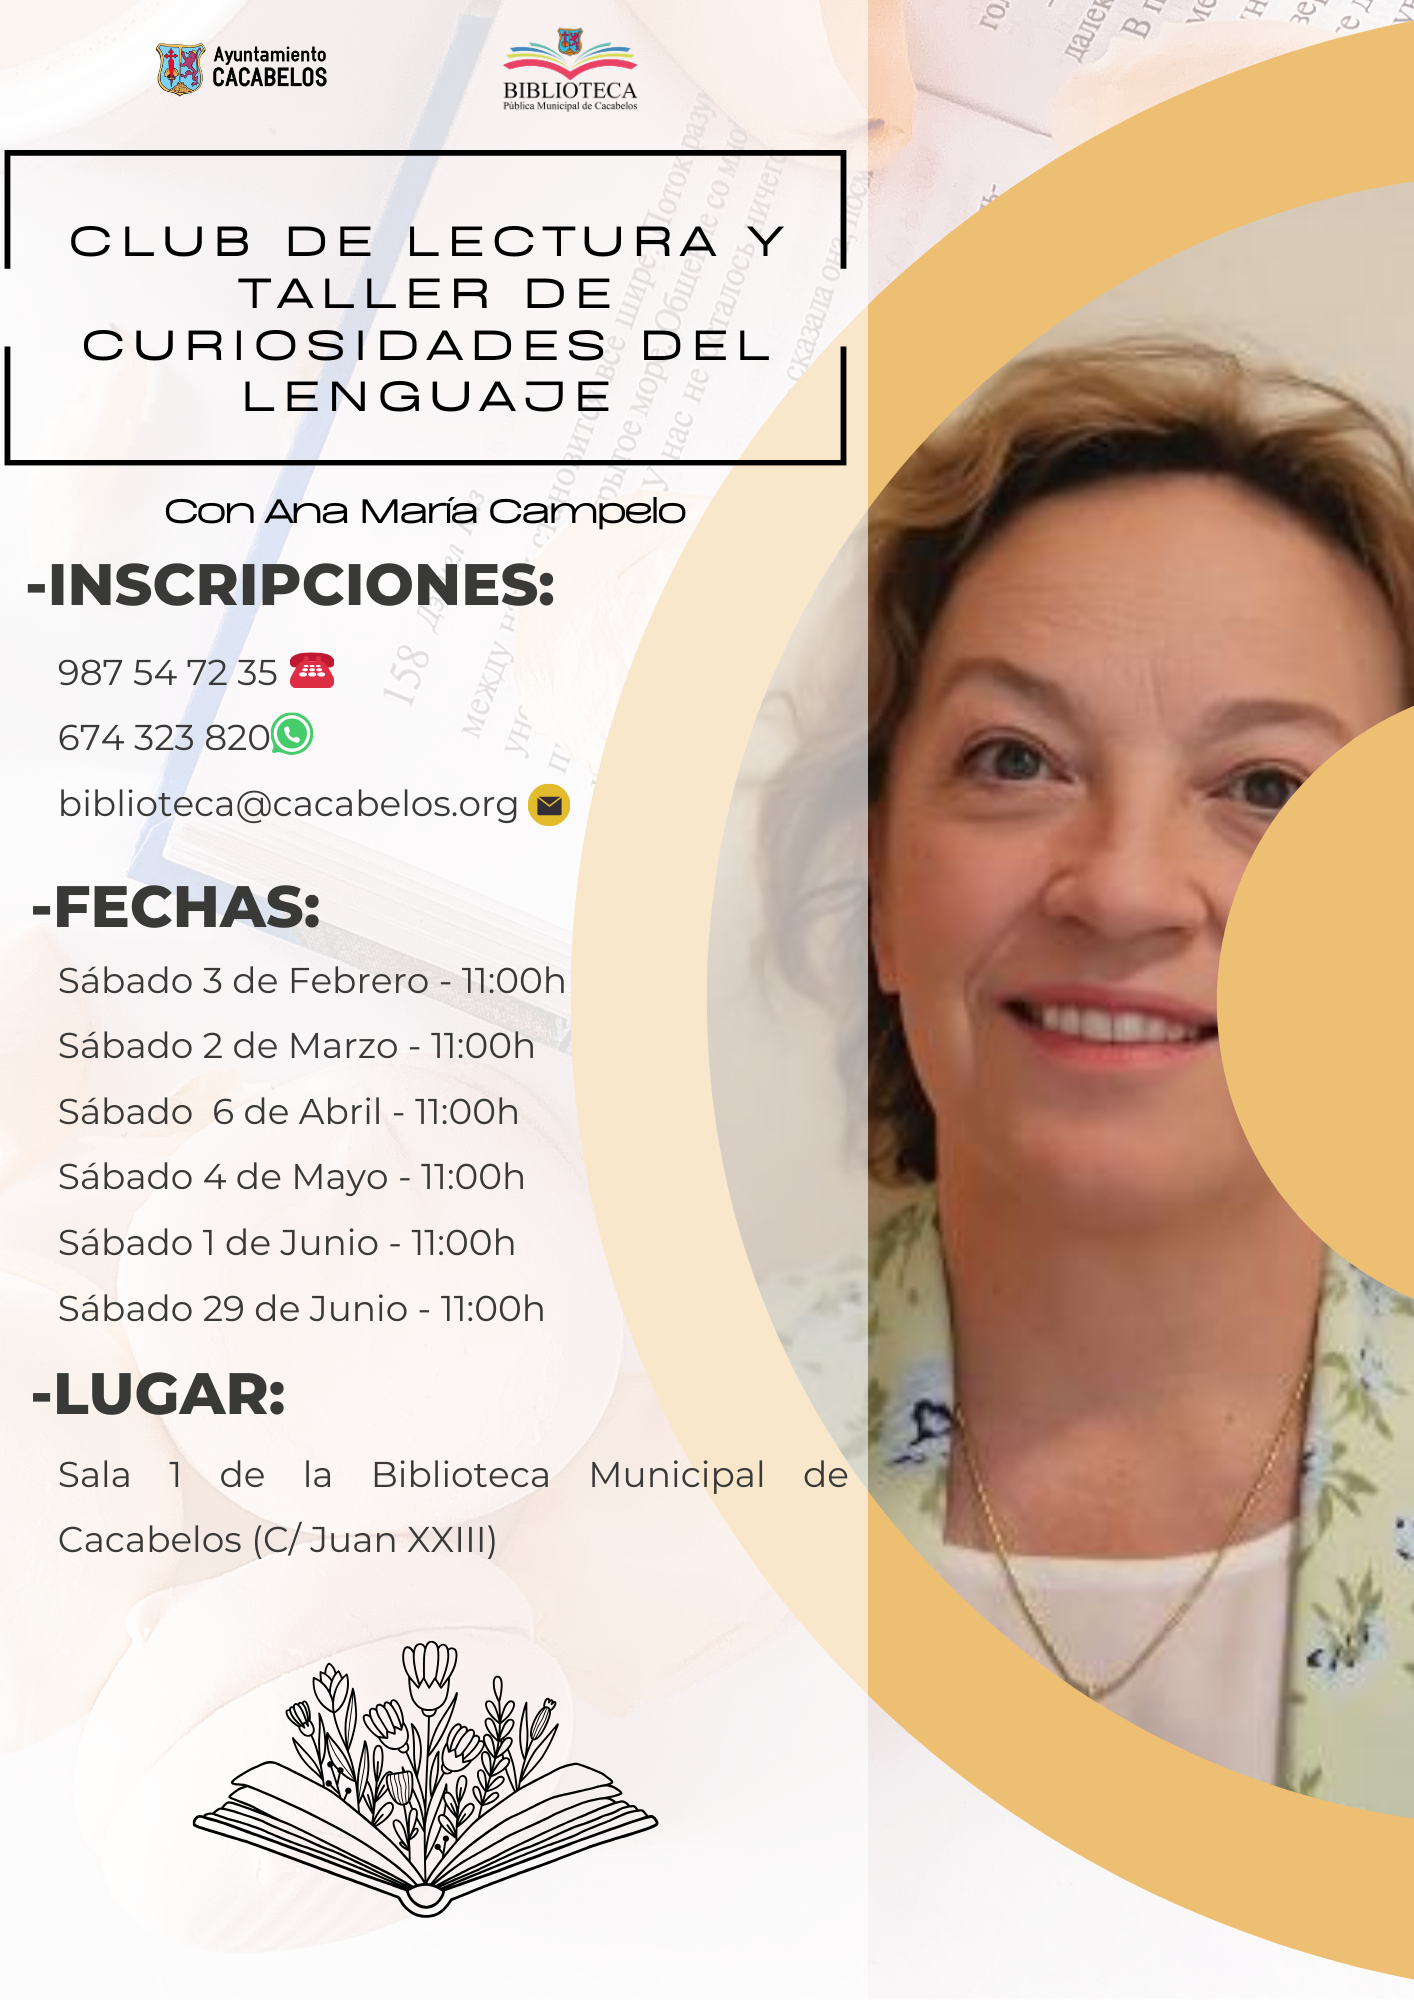 La Biblioteca De Cacabelos retoma su Club de Lectura de la mano de Ana María Campelo 2